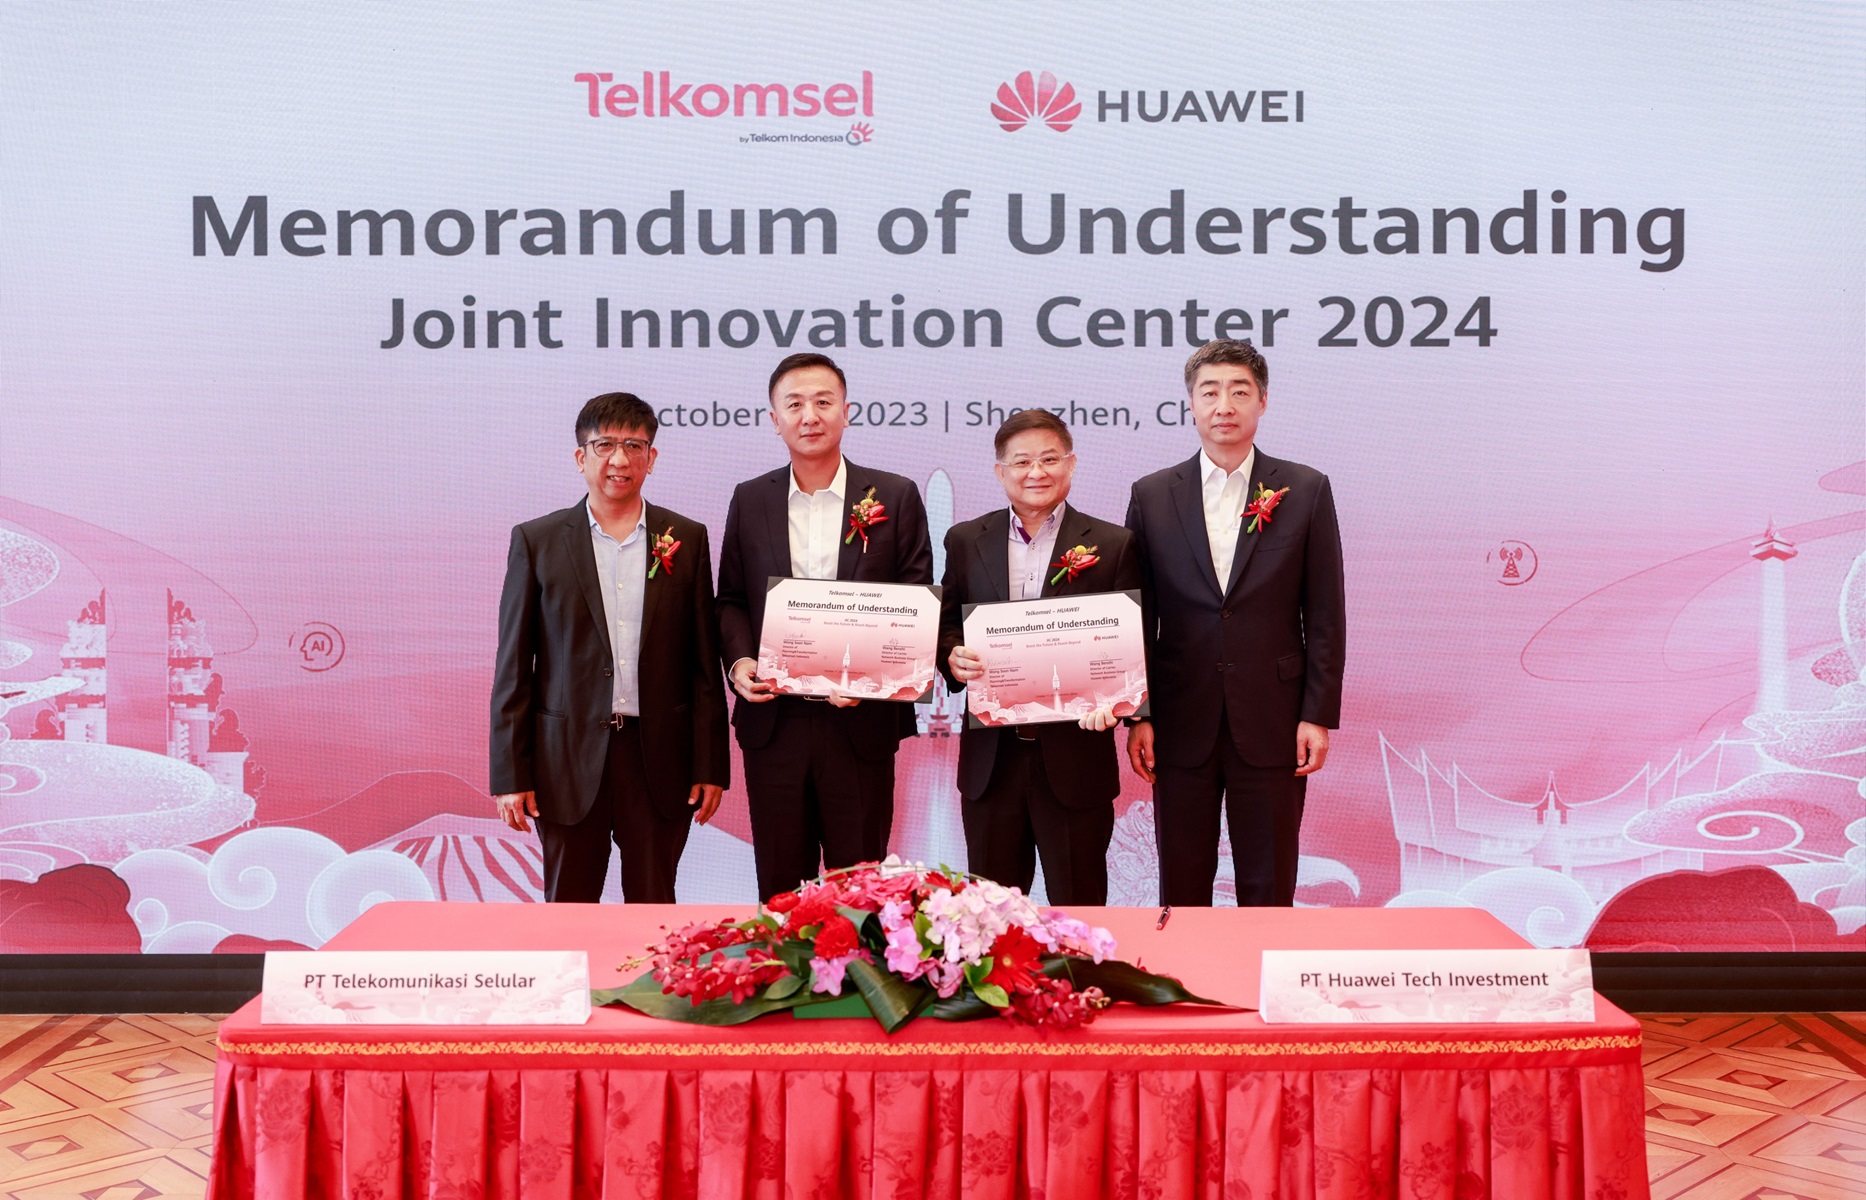 Percepat Pembangunan Digital Indonesia, Huawei dan Telkomsel Tandatangani MoU Superior City